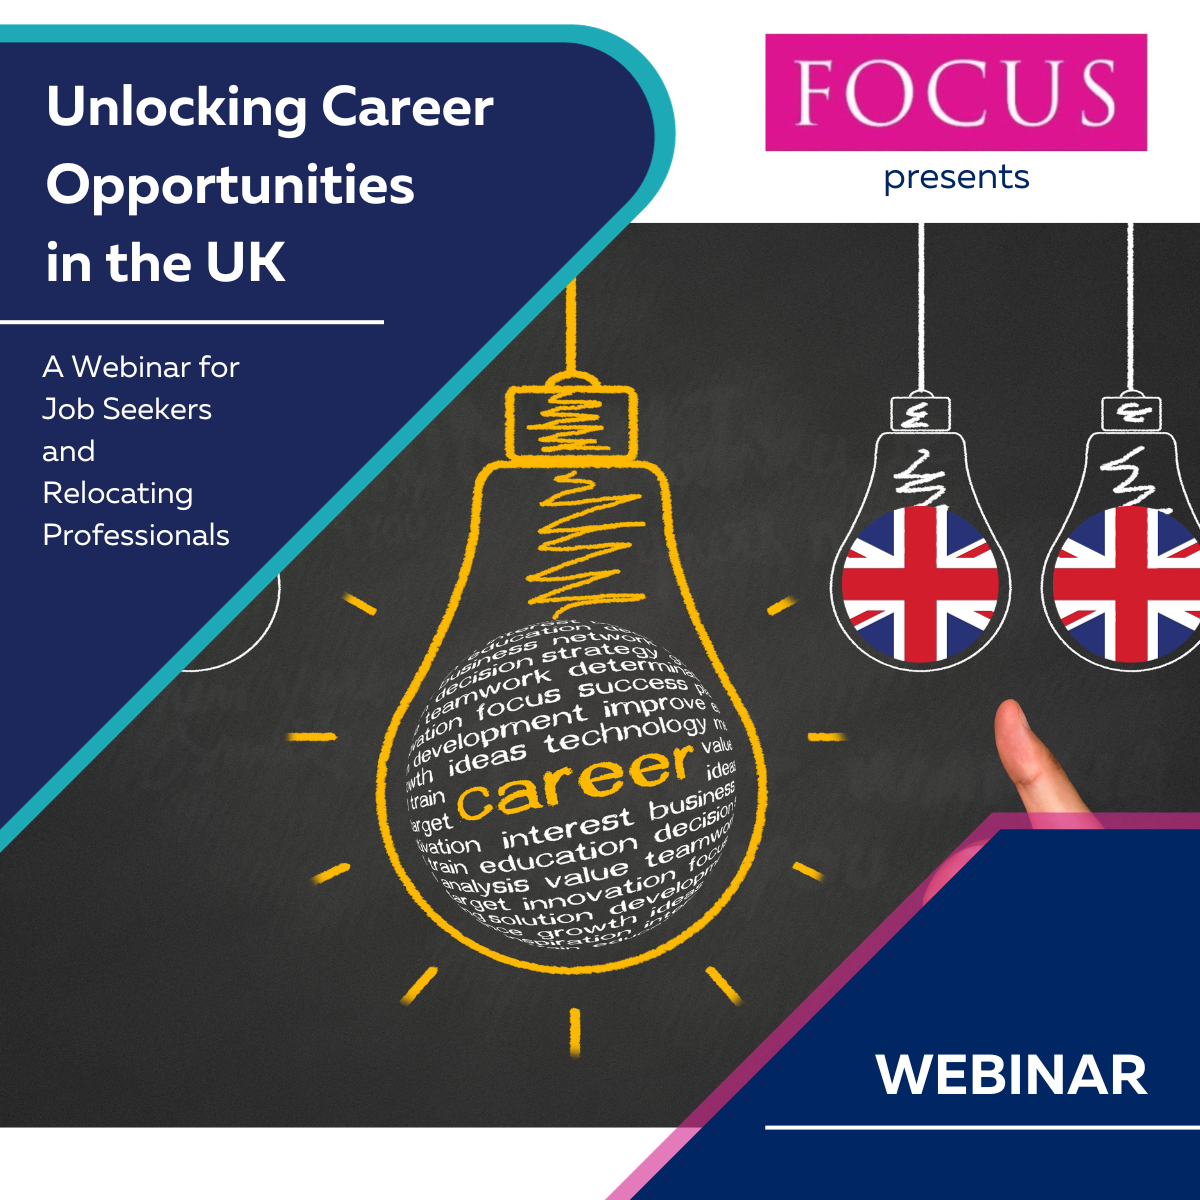 FOCUS Webinar – Unlocking Career Opportunities in the UK